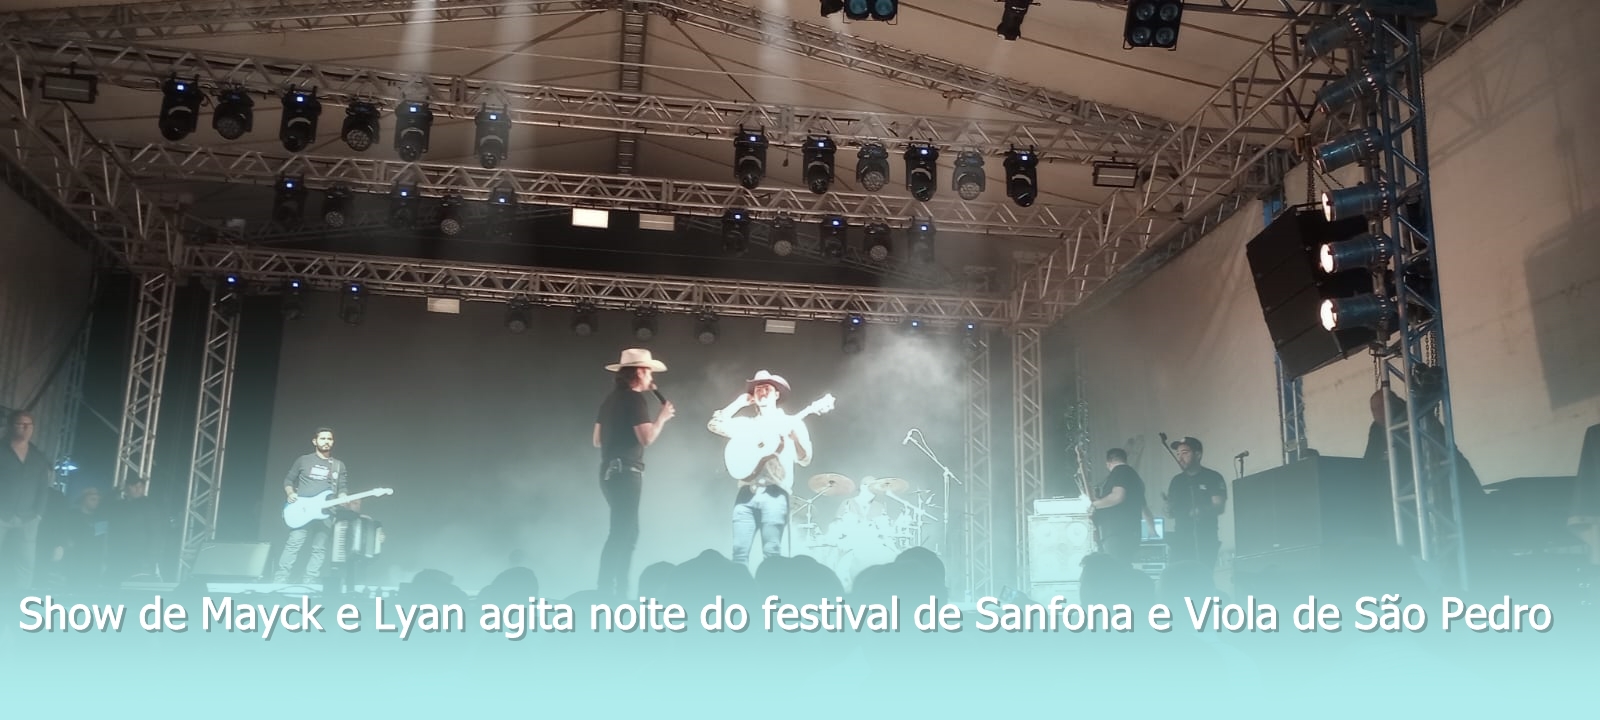 Show de Mayck e Lyan agita noite do festival de Sanfona e Viola de São Pedro